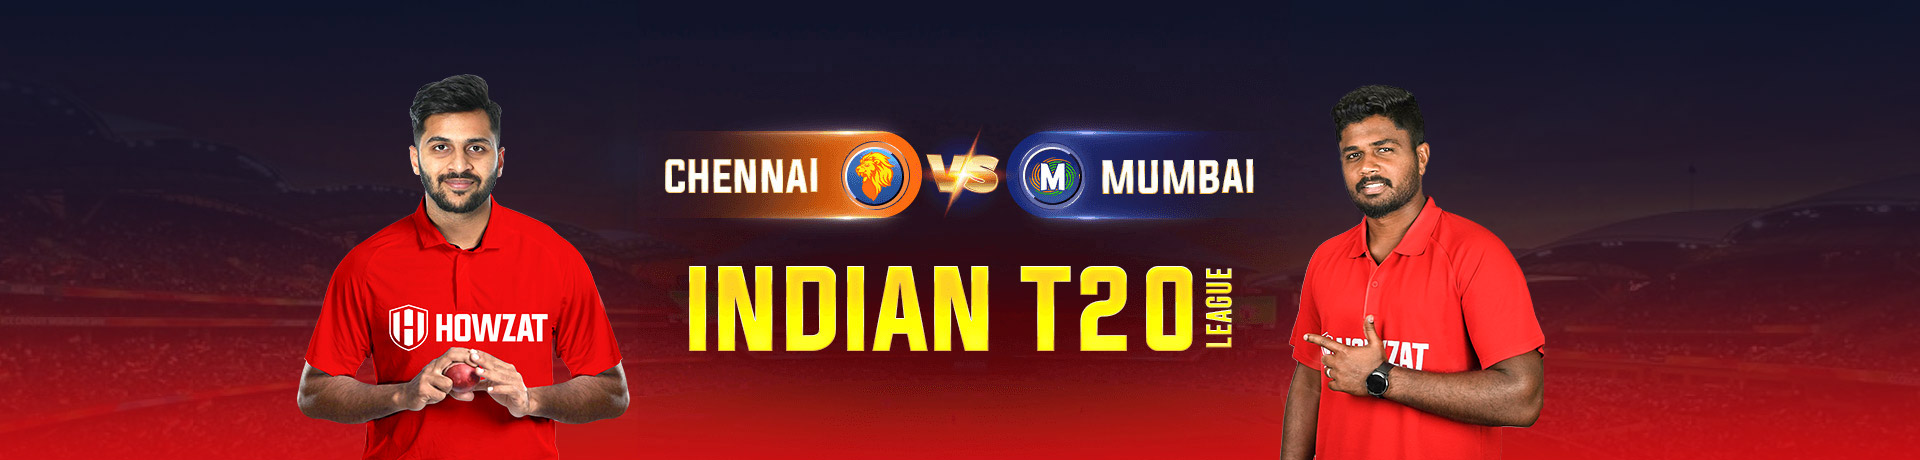 Chennai vs Mumbai